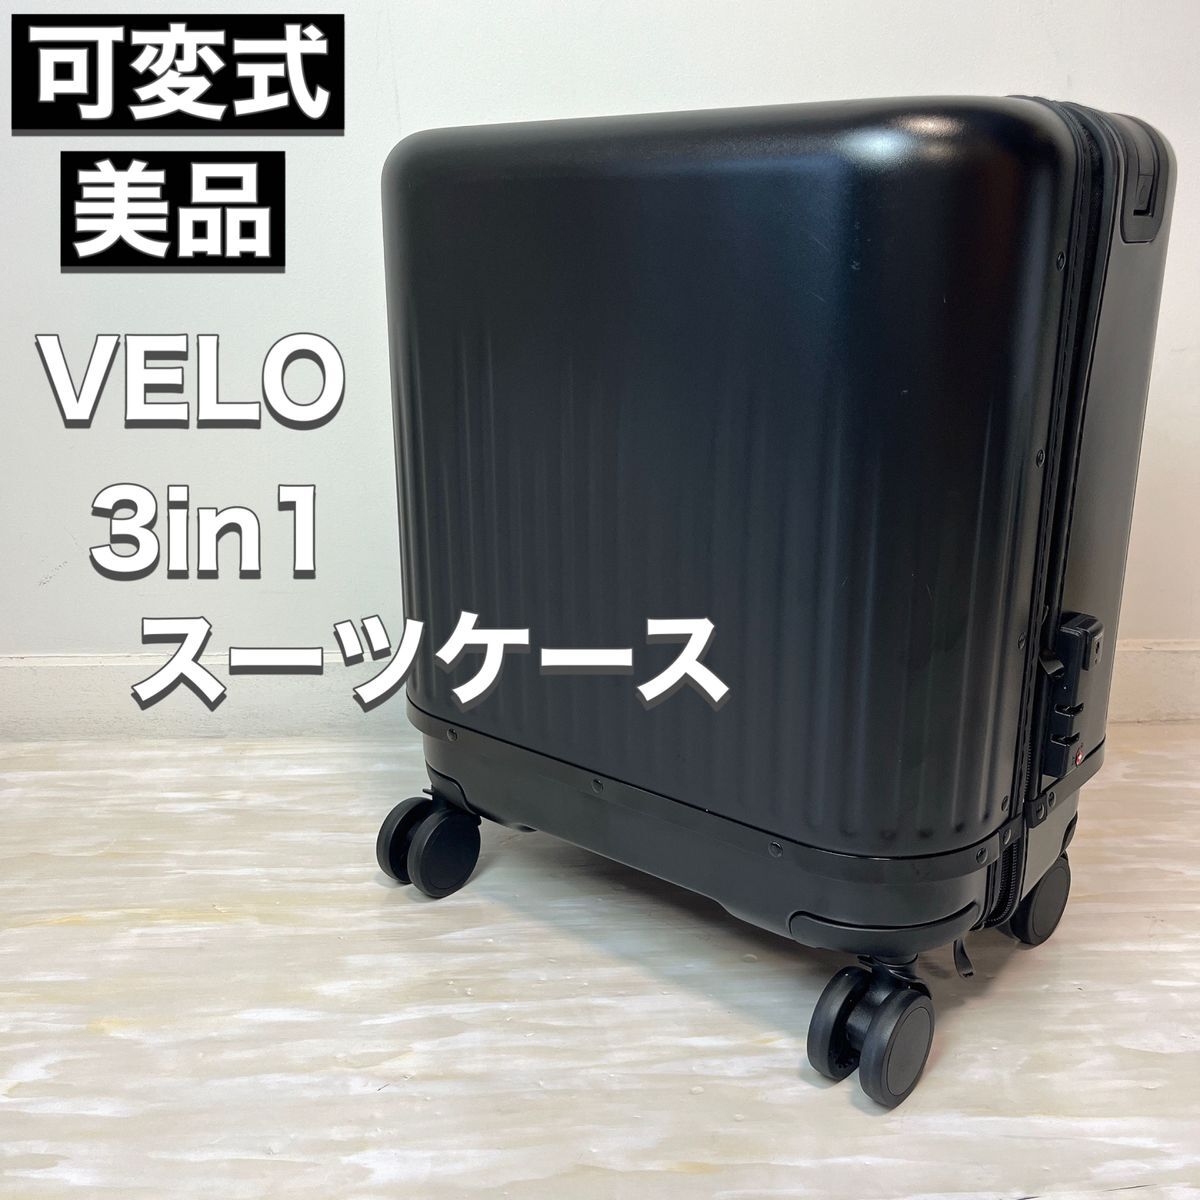 VELO ヴェーロ スーツケース 3in1 3段 可変式 キャリー ブラック_画像1